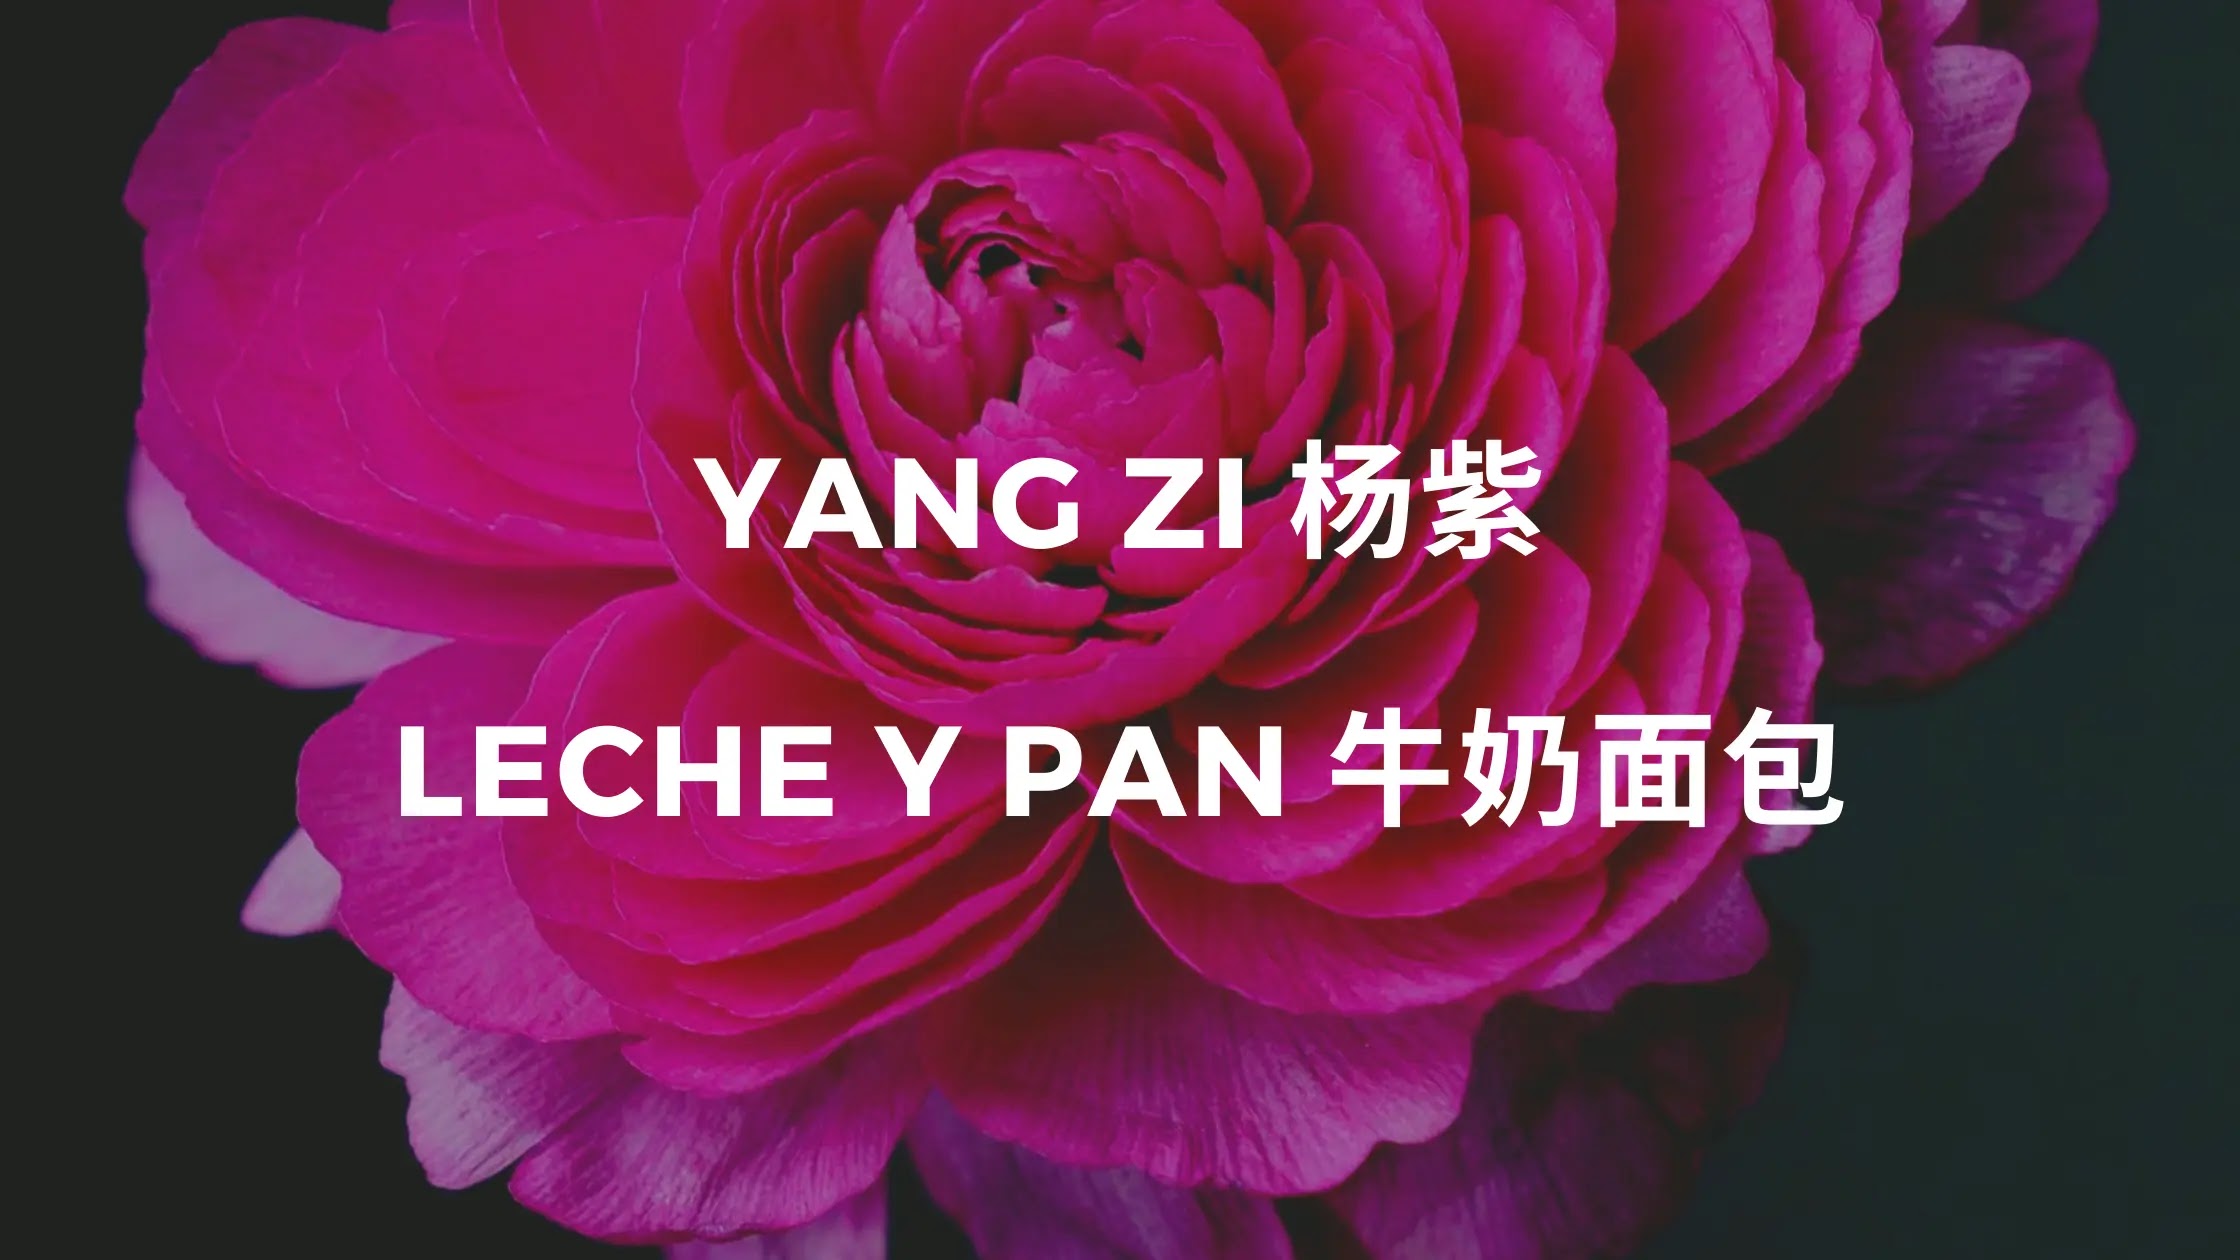 Yang Zi - Leche y pan